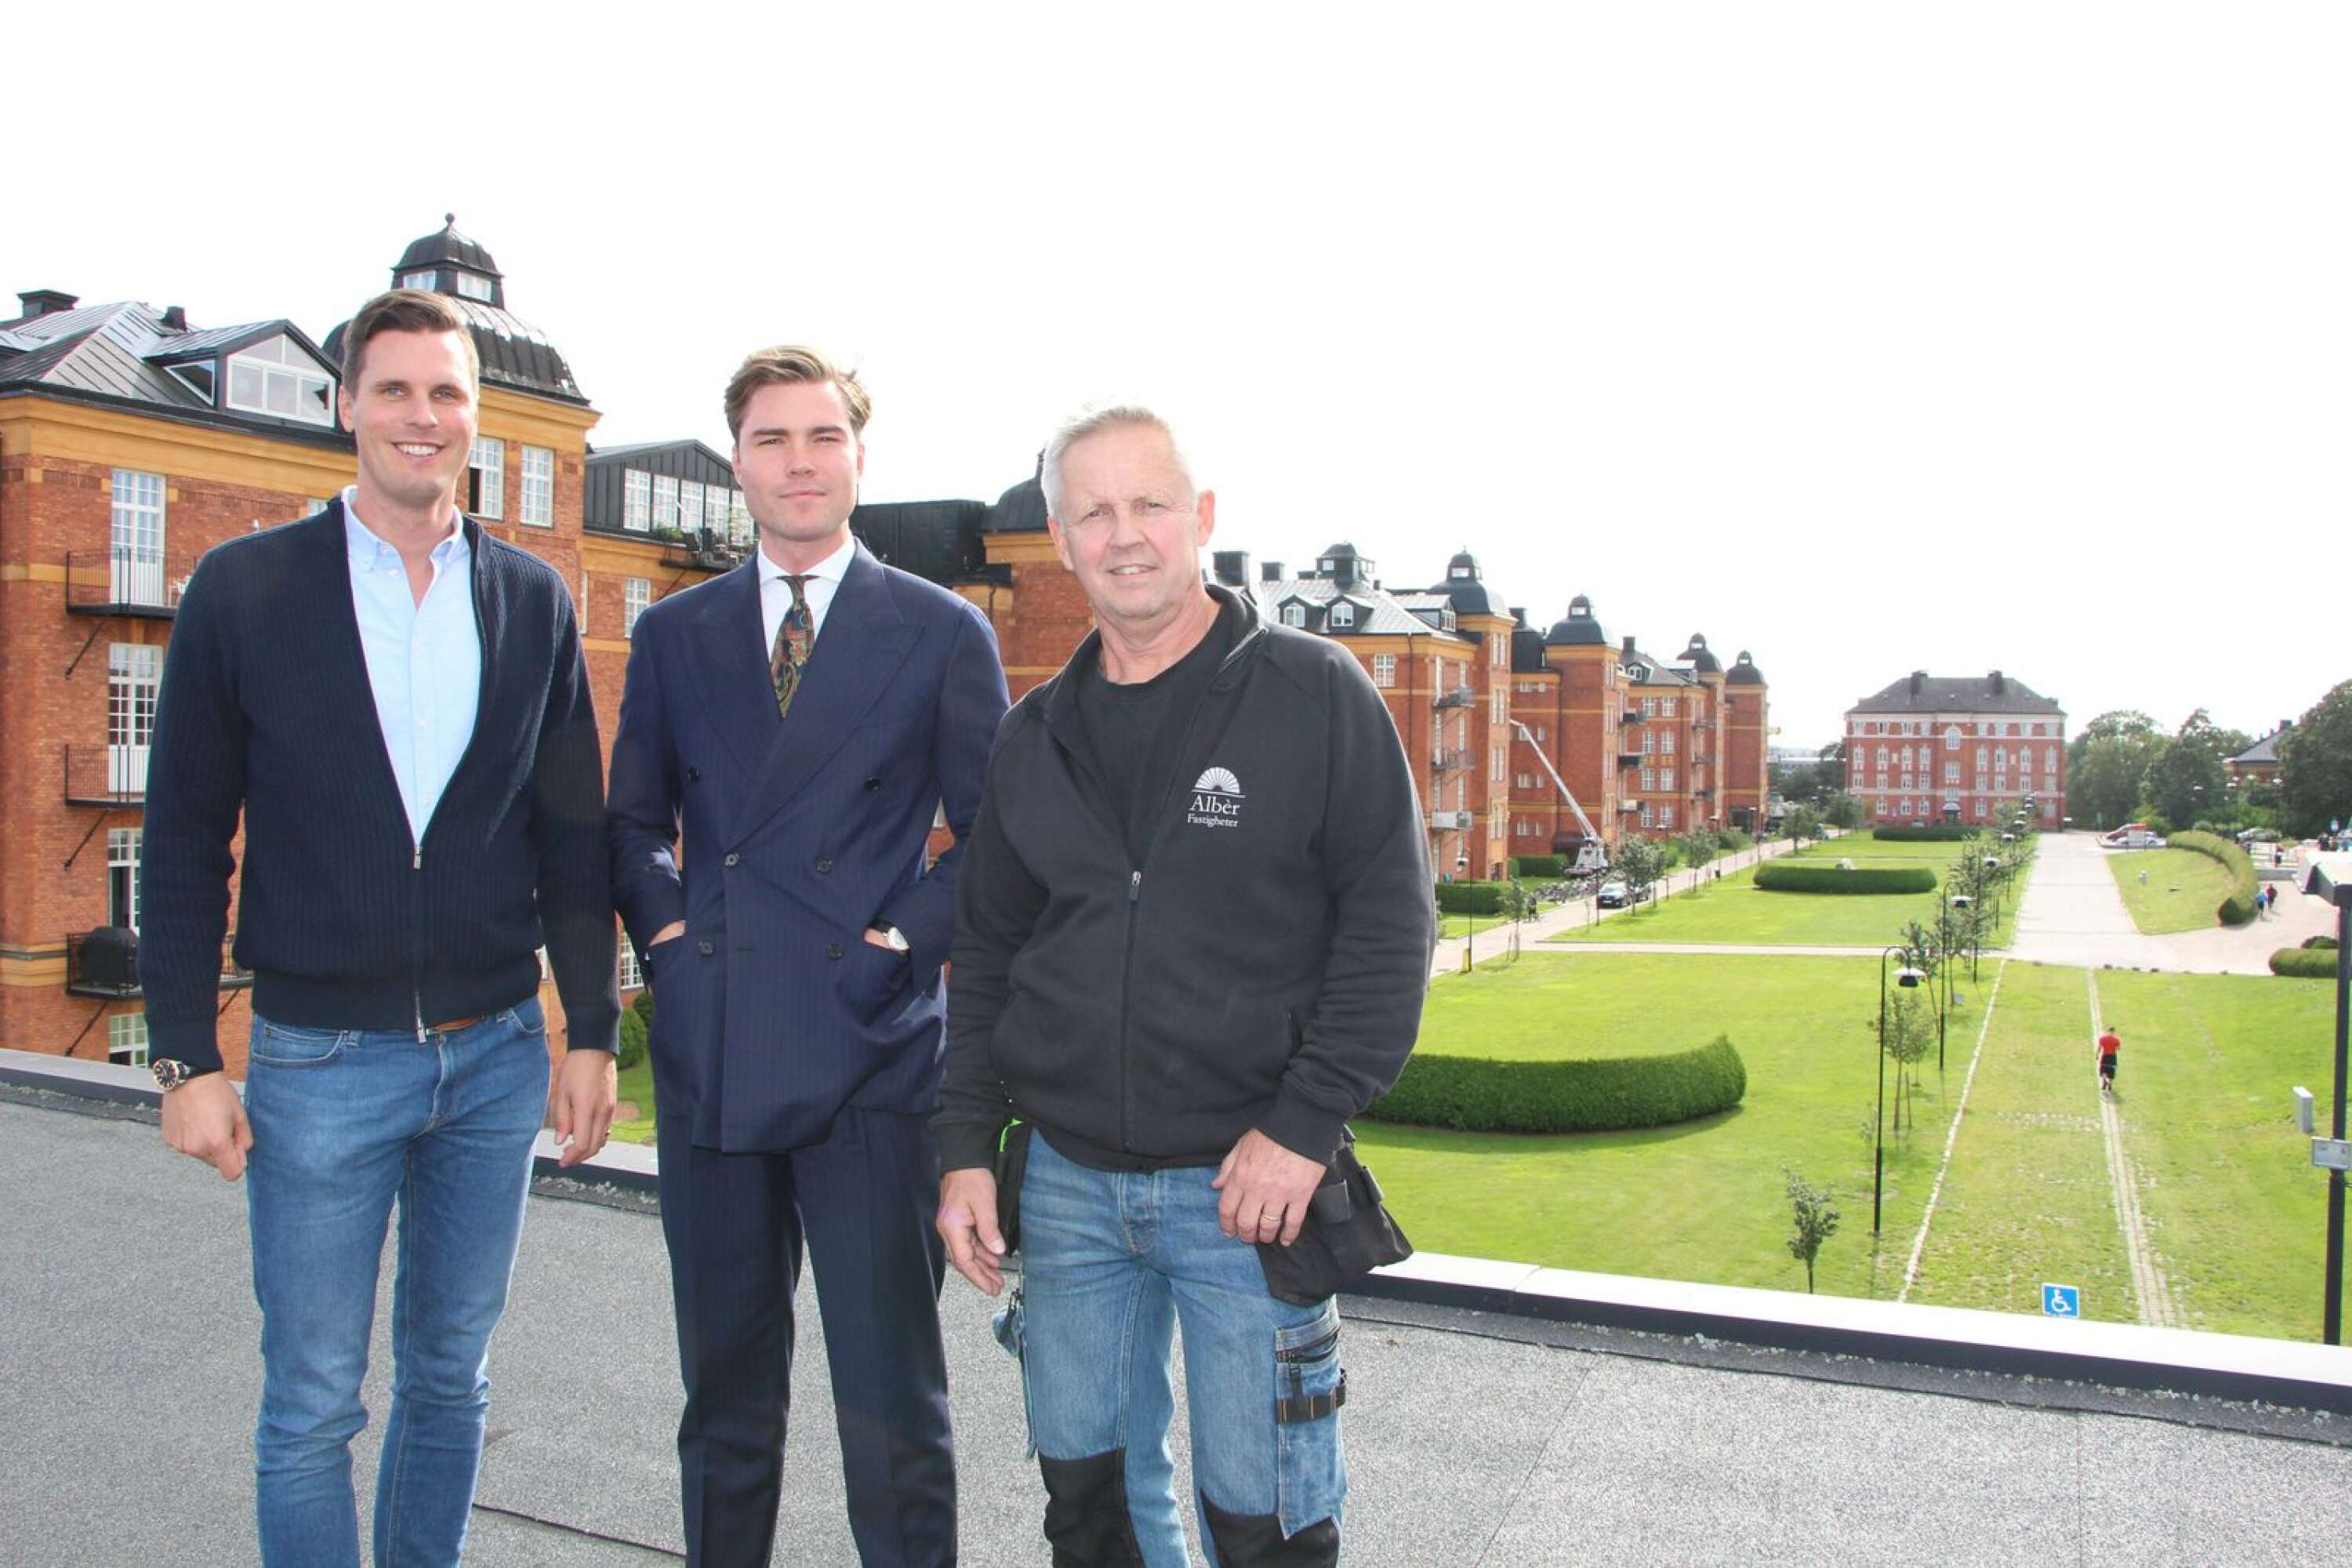 Albèr fastigheter planerar en stor utbyggnad av Kasernhöjden med nya bostäder och kontor. På bilden ses delägarna David Eriksson och Filip Eriksson samt byggchefen Torbjörn Hillerström.